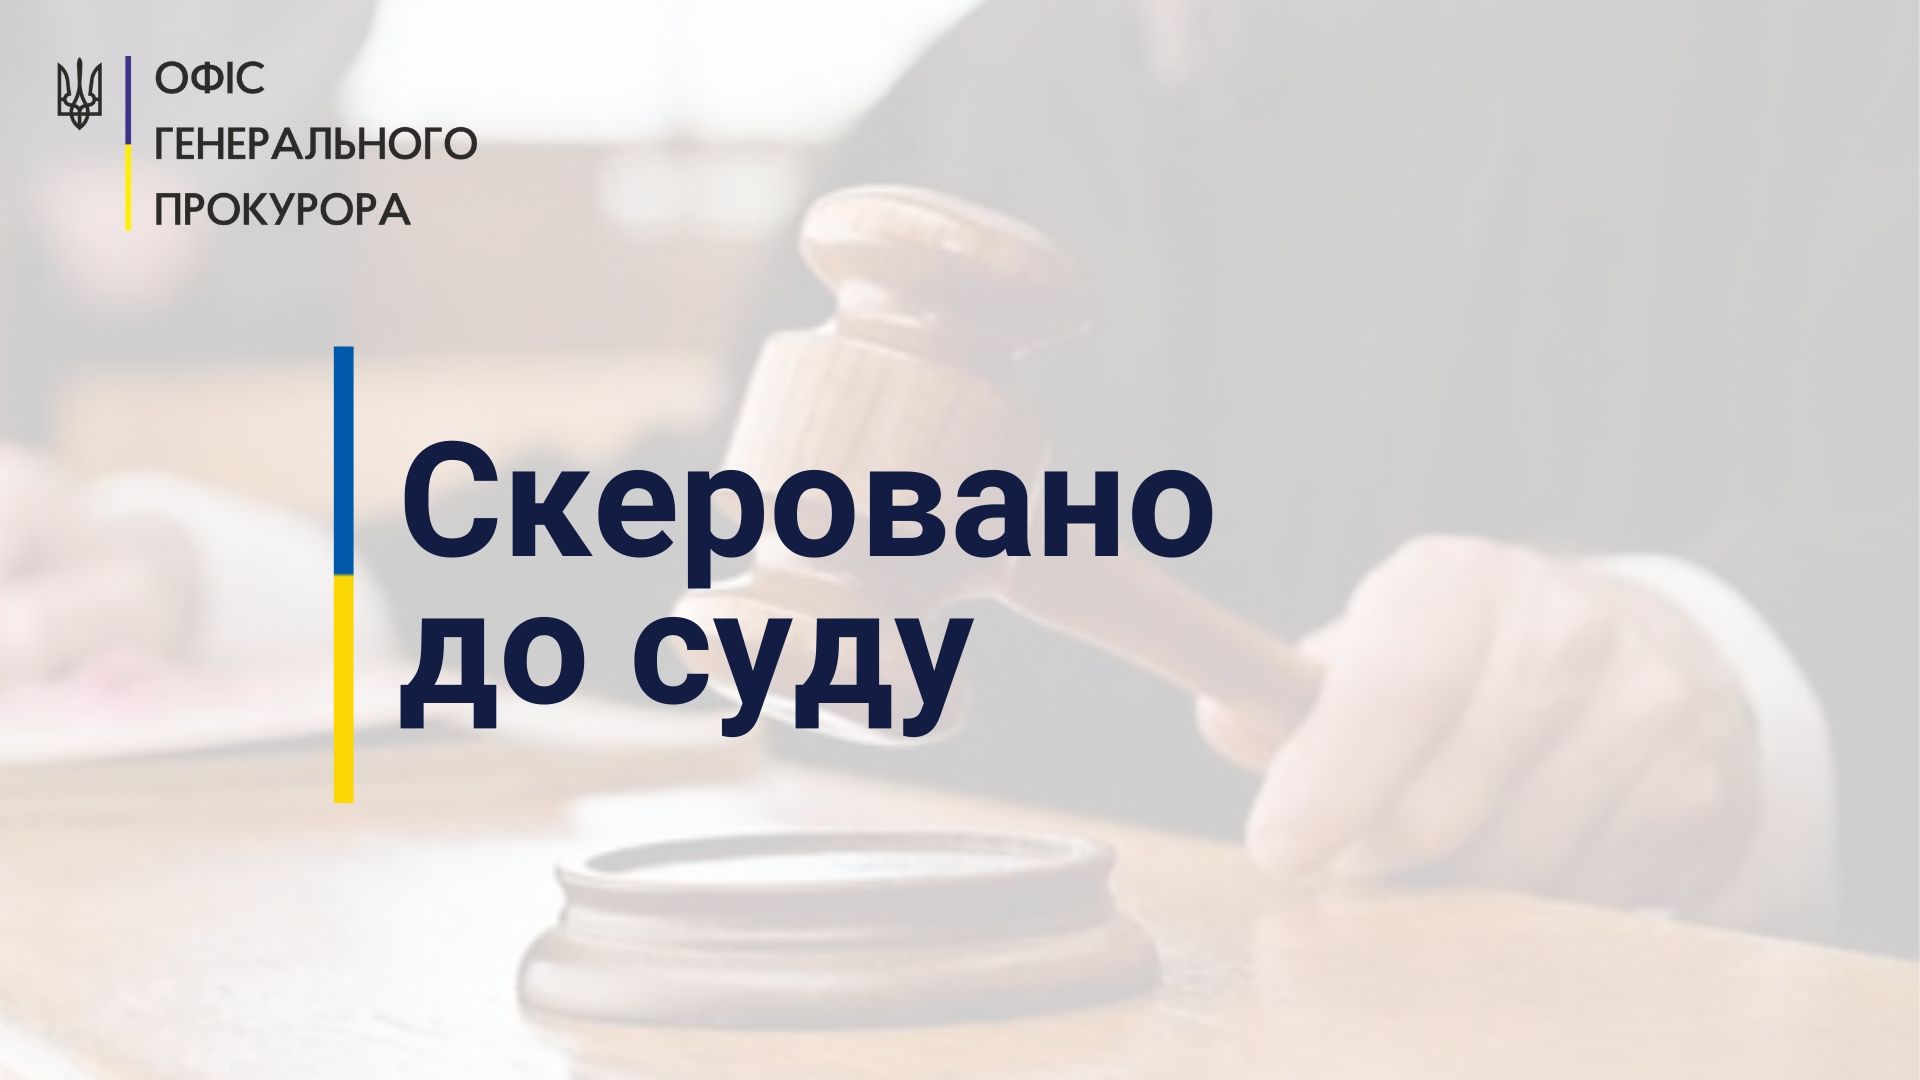 Ухилення від сплати 8,7 млн грн податків – на Кіровоградщині судитимуть керівника теплопостачального підприємства